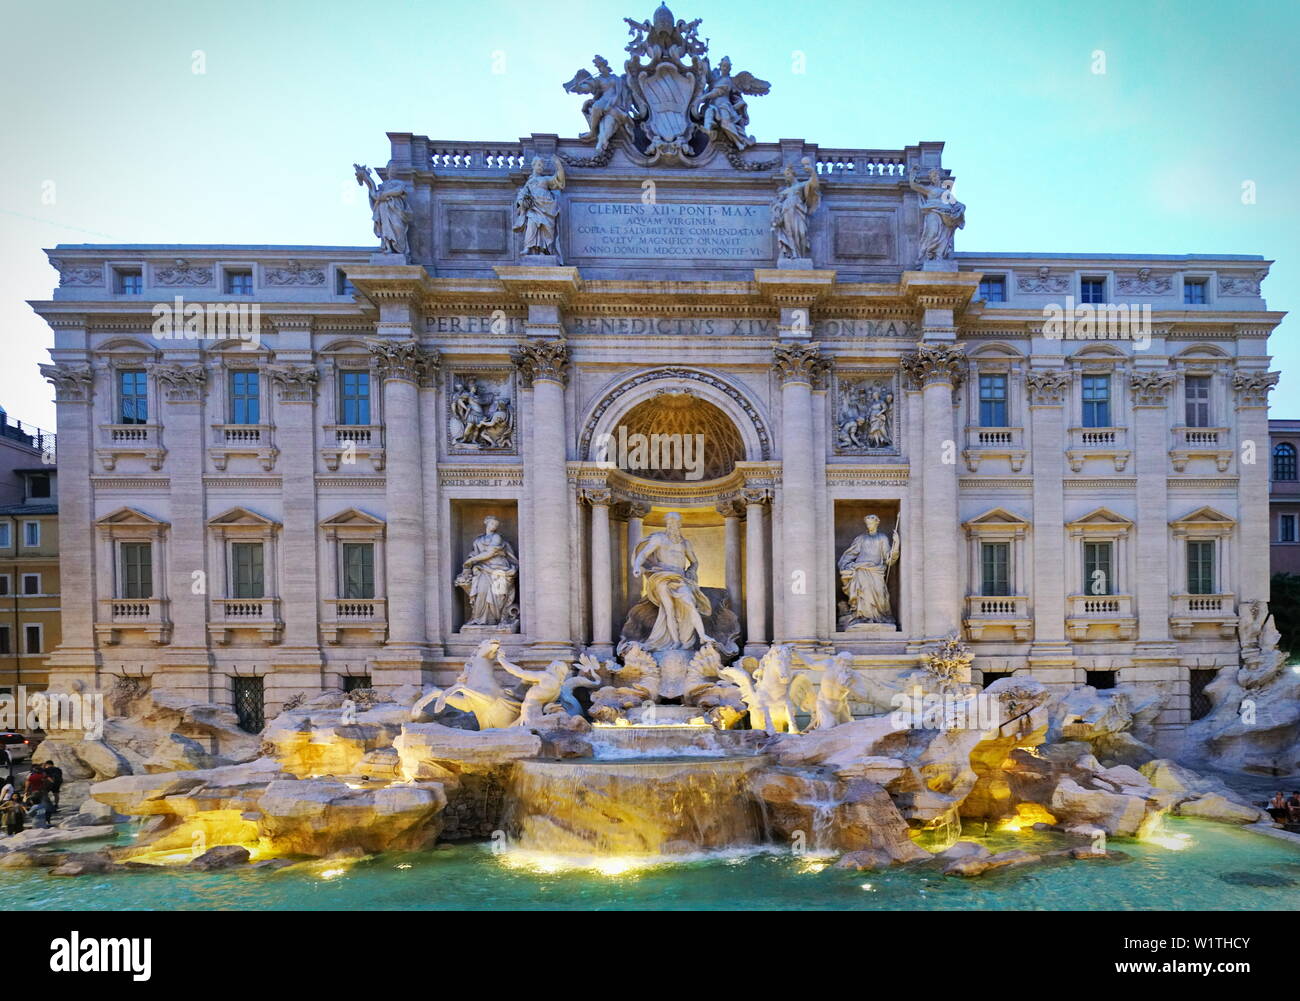 Famoso y uno de los más bellos de Trevi de Roma - Fontana de Trevi (Fontana di Trevi). Italia Foto de stock